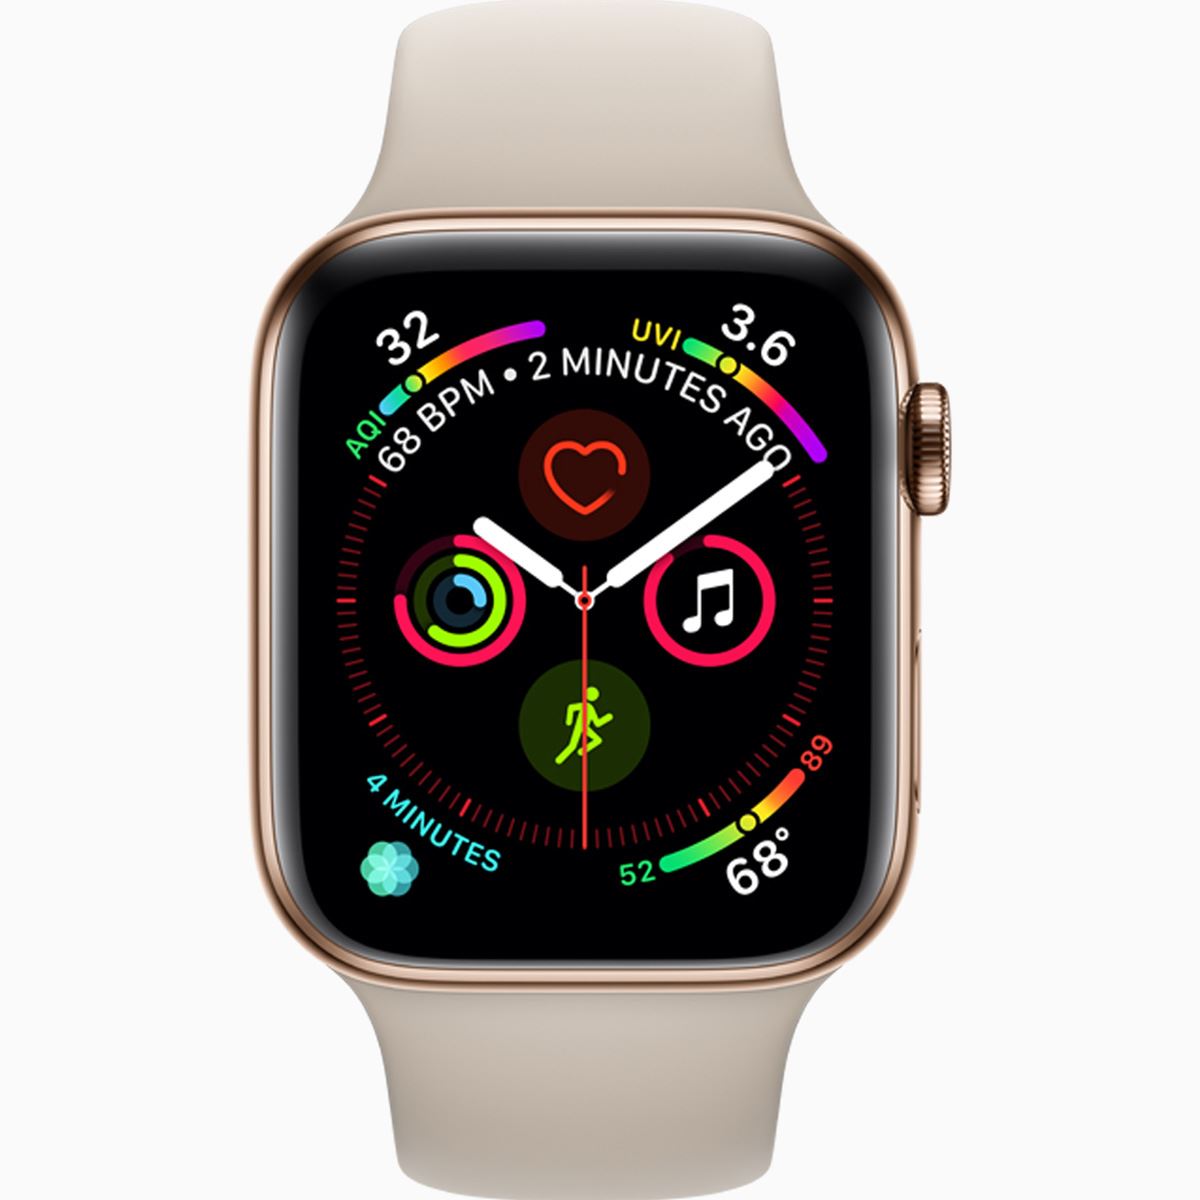 命を救う腕時計「Apple Watch Series 4」が登場。不整脈検知と心電図に 